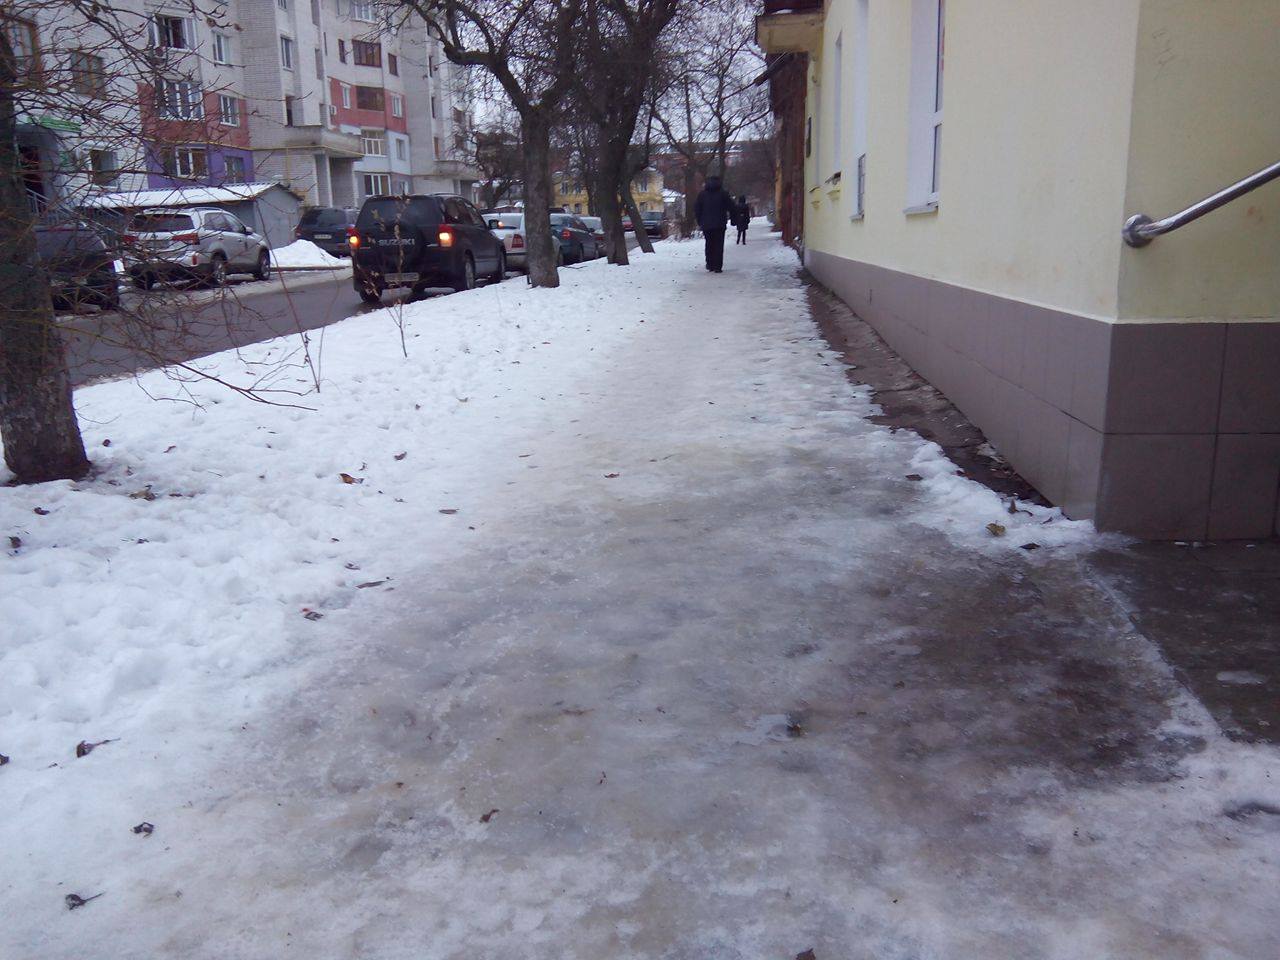 Чернігівські обмерзлі тротуари калічать людей - містянам уривається терпець